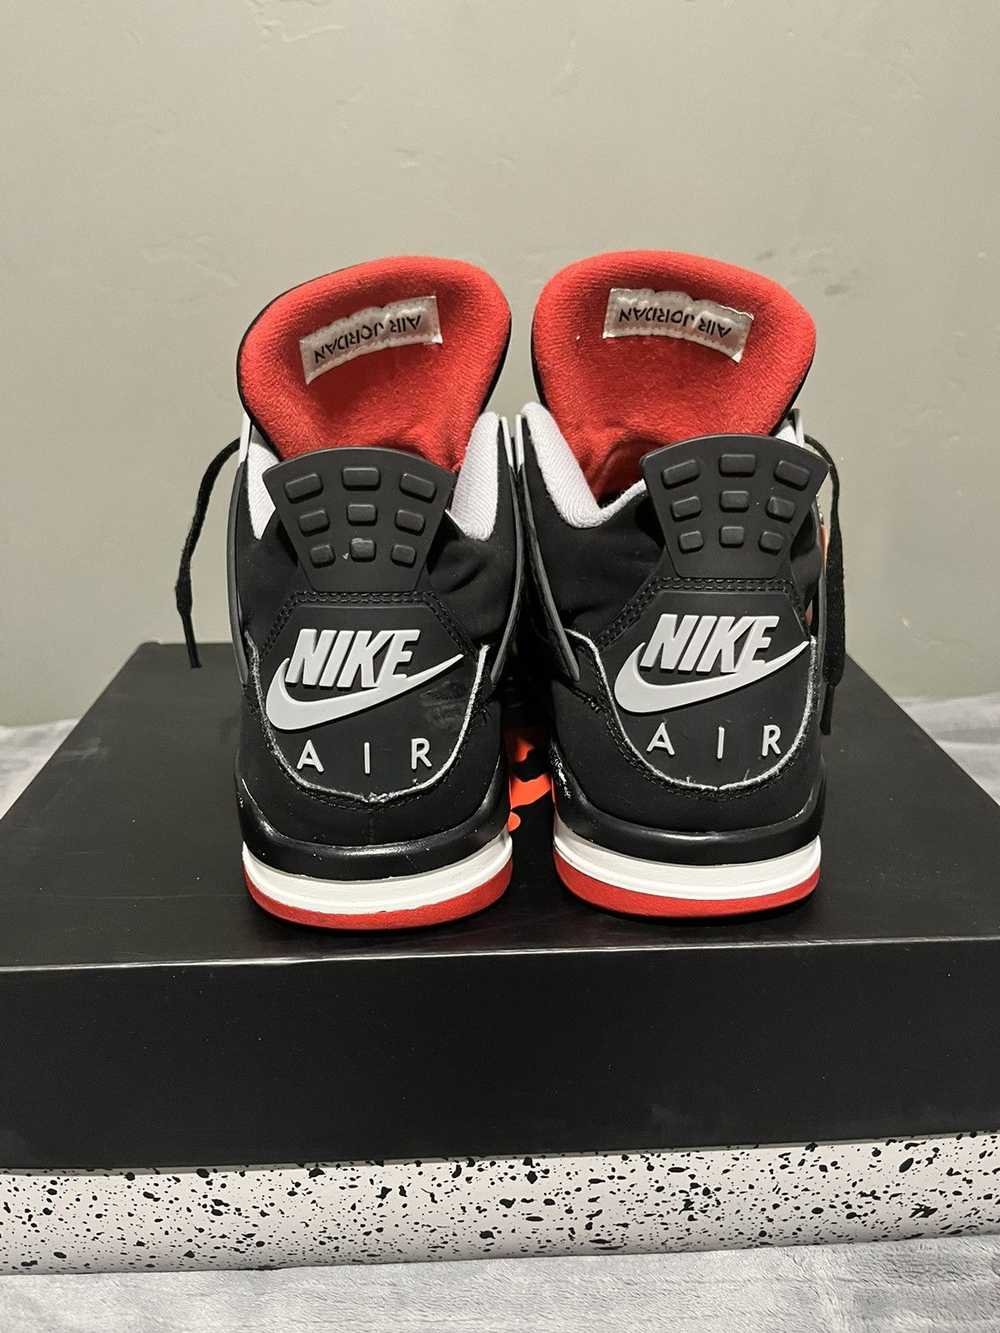 Jordan Brand × Nike Air Jordan retro 4 bred - image 6